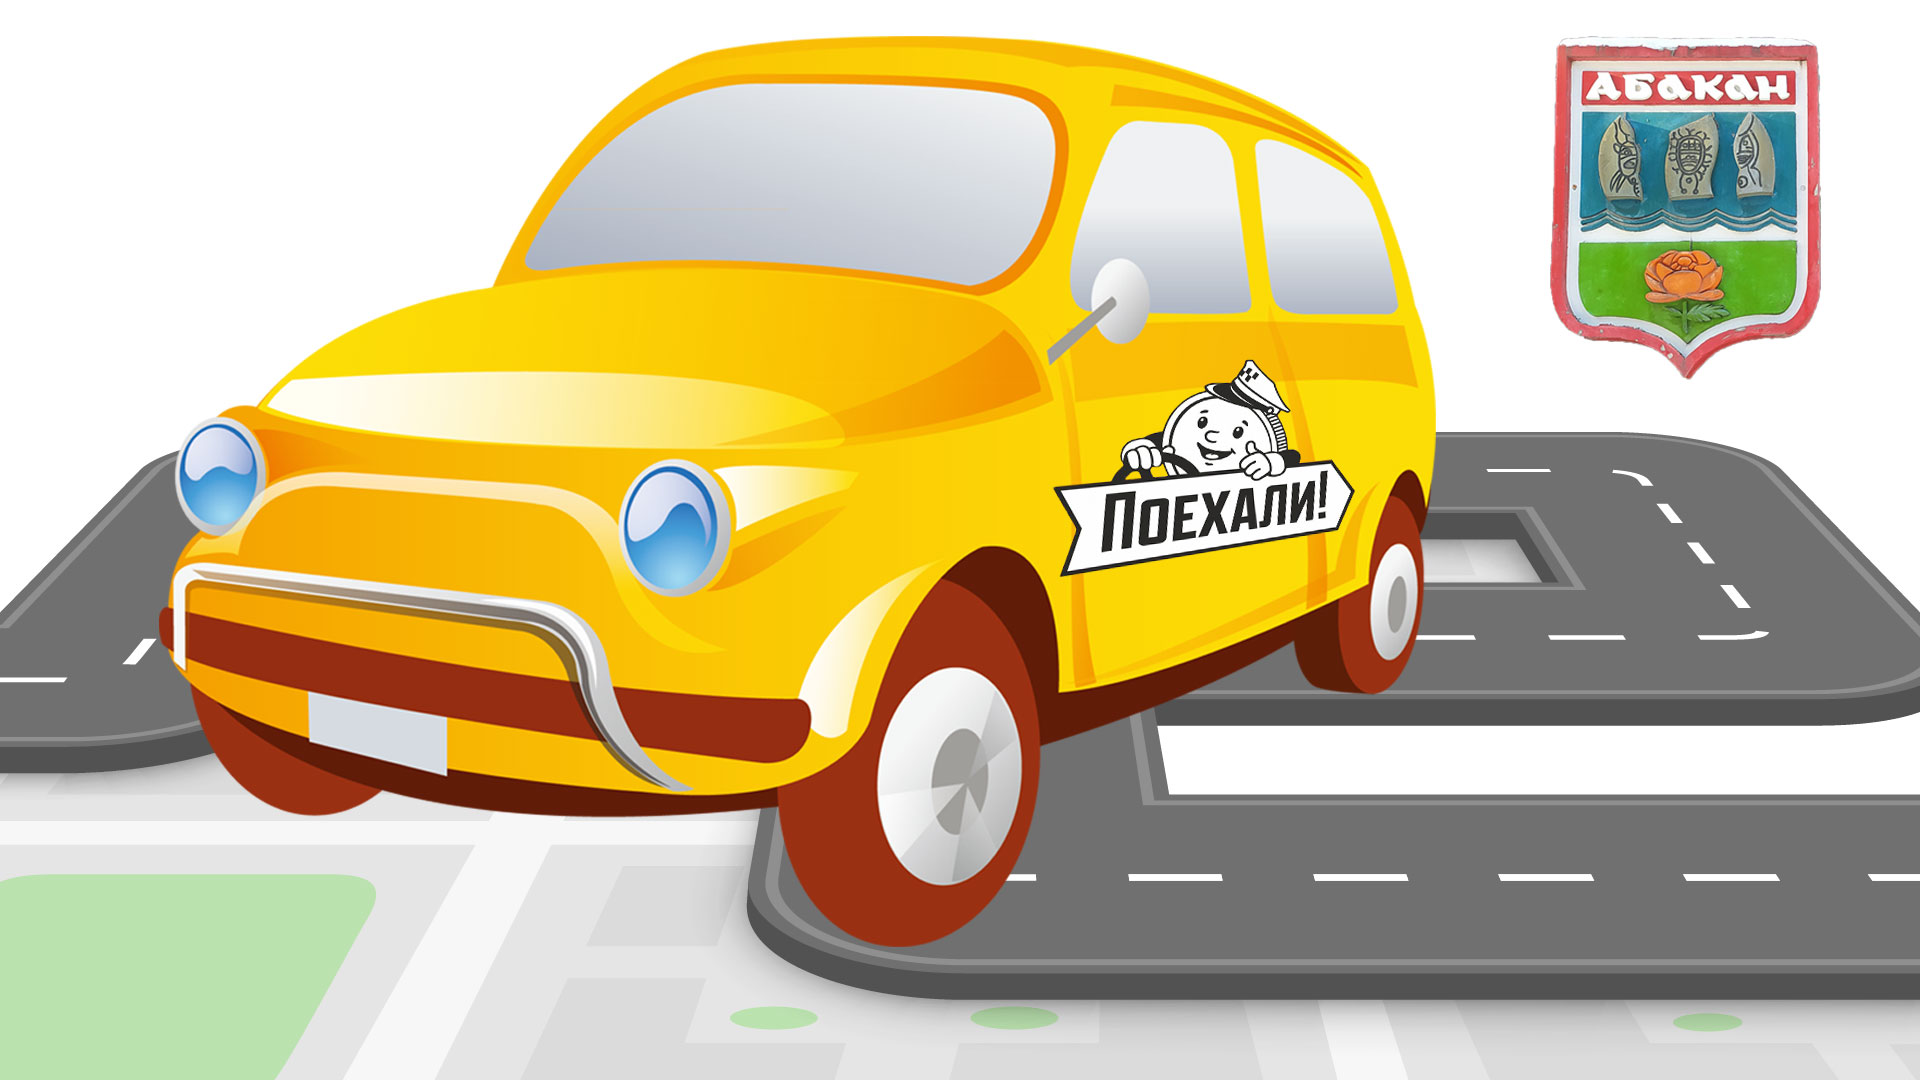 Машина с наклейкой такси "Поехали" и герб Абакана